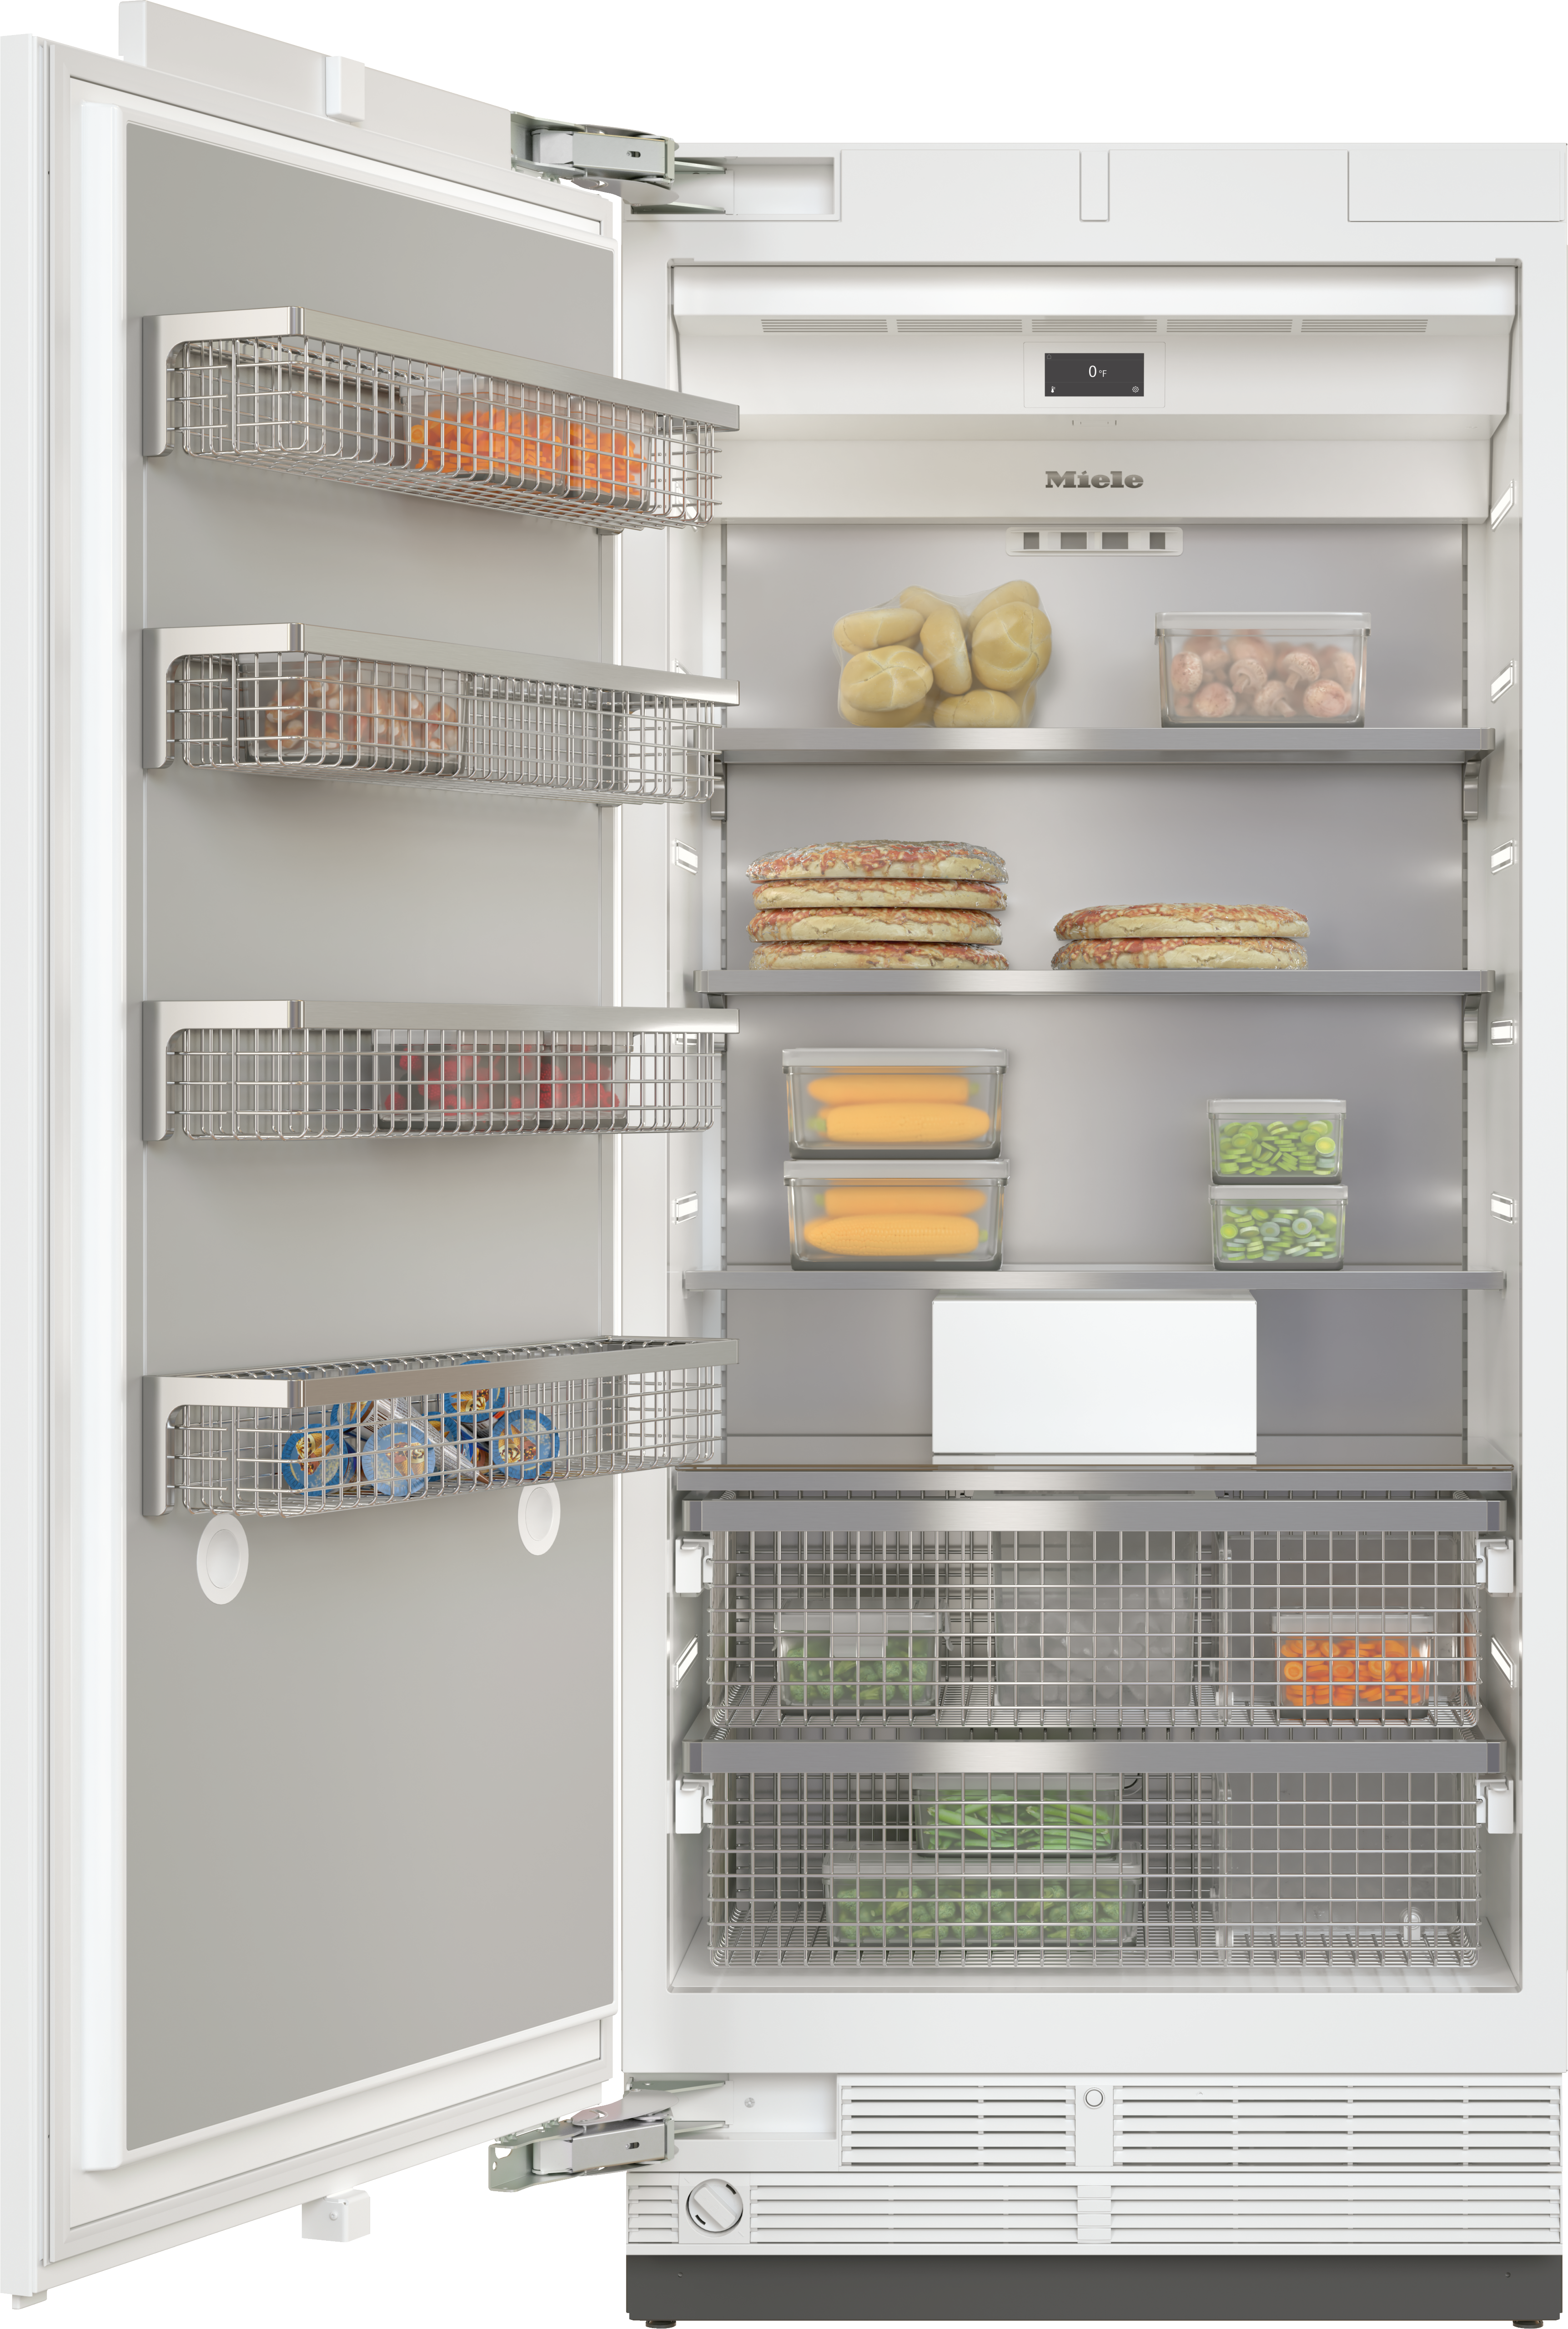 Miele - F 2912 Vi – Refrigerators and freezers